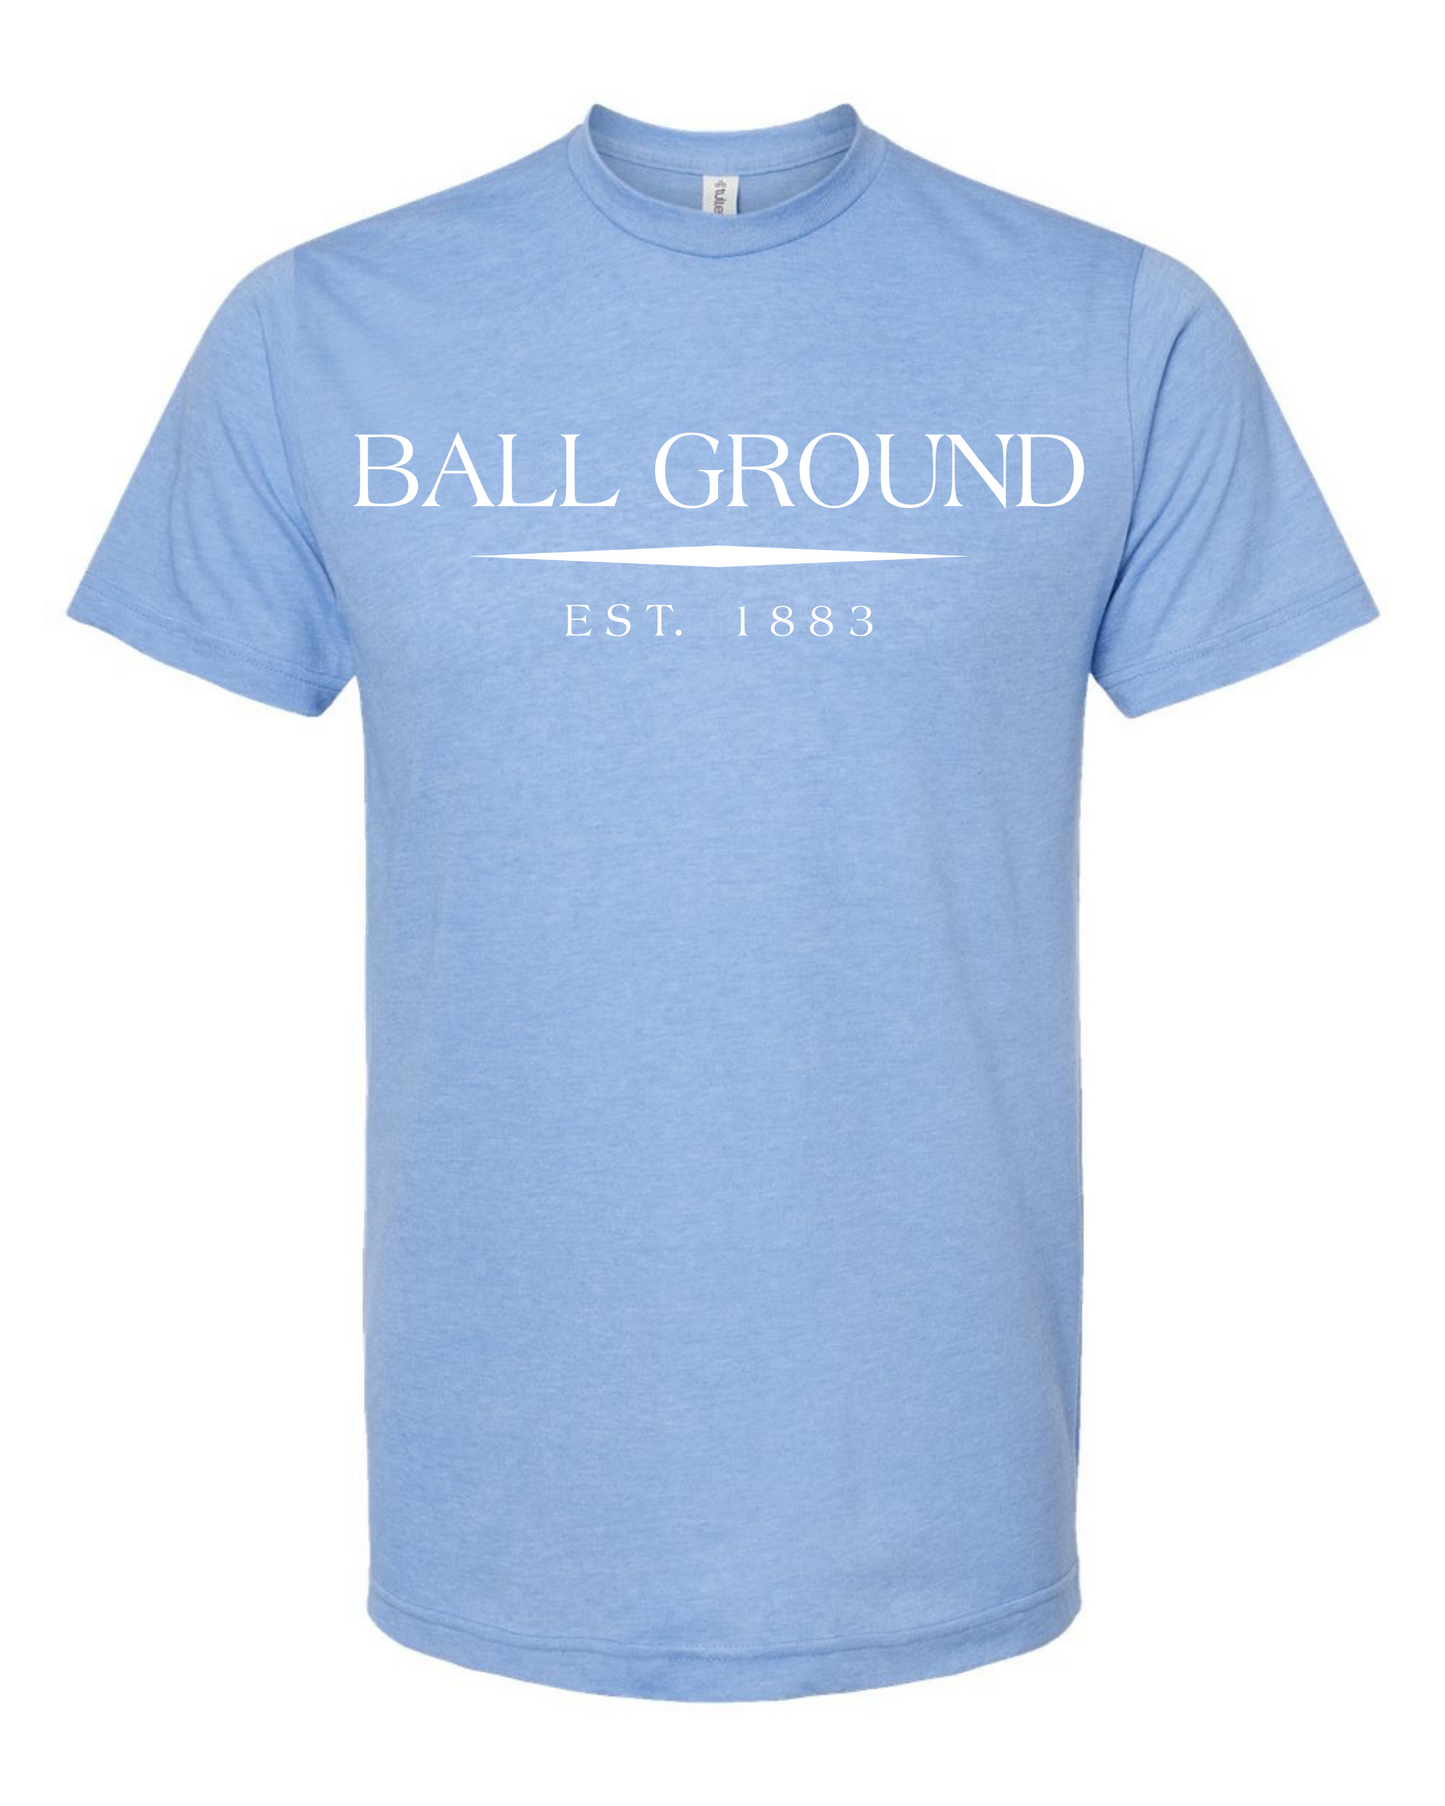 Ball Ground T-Shirt